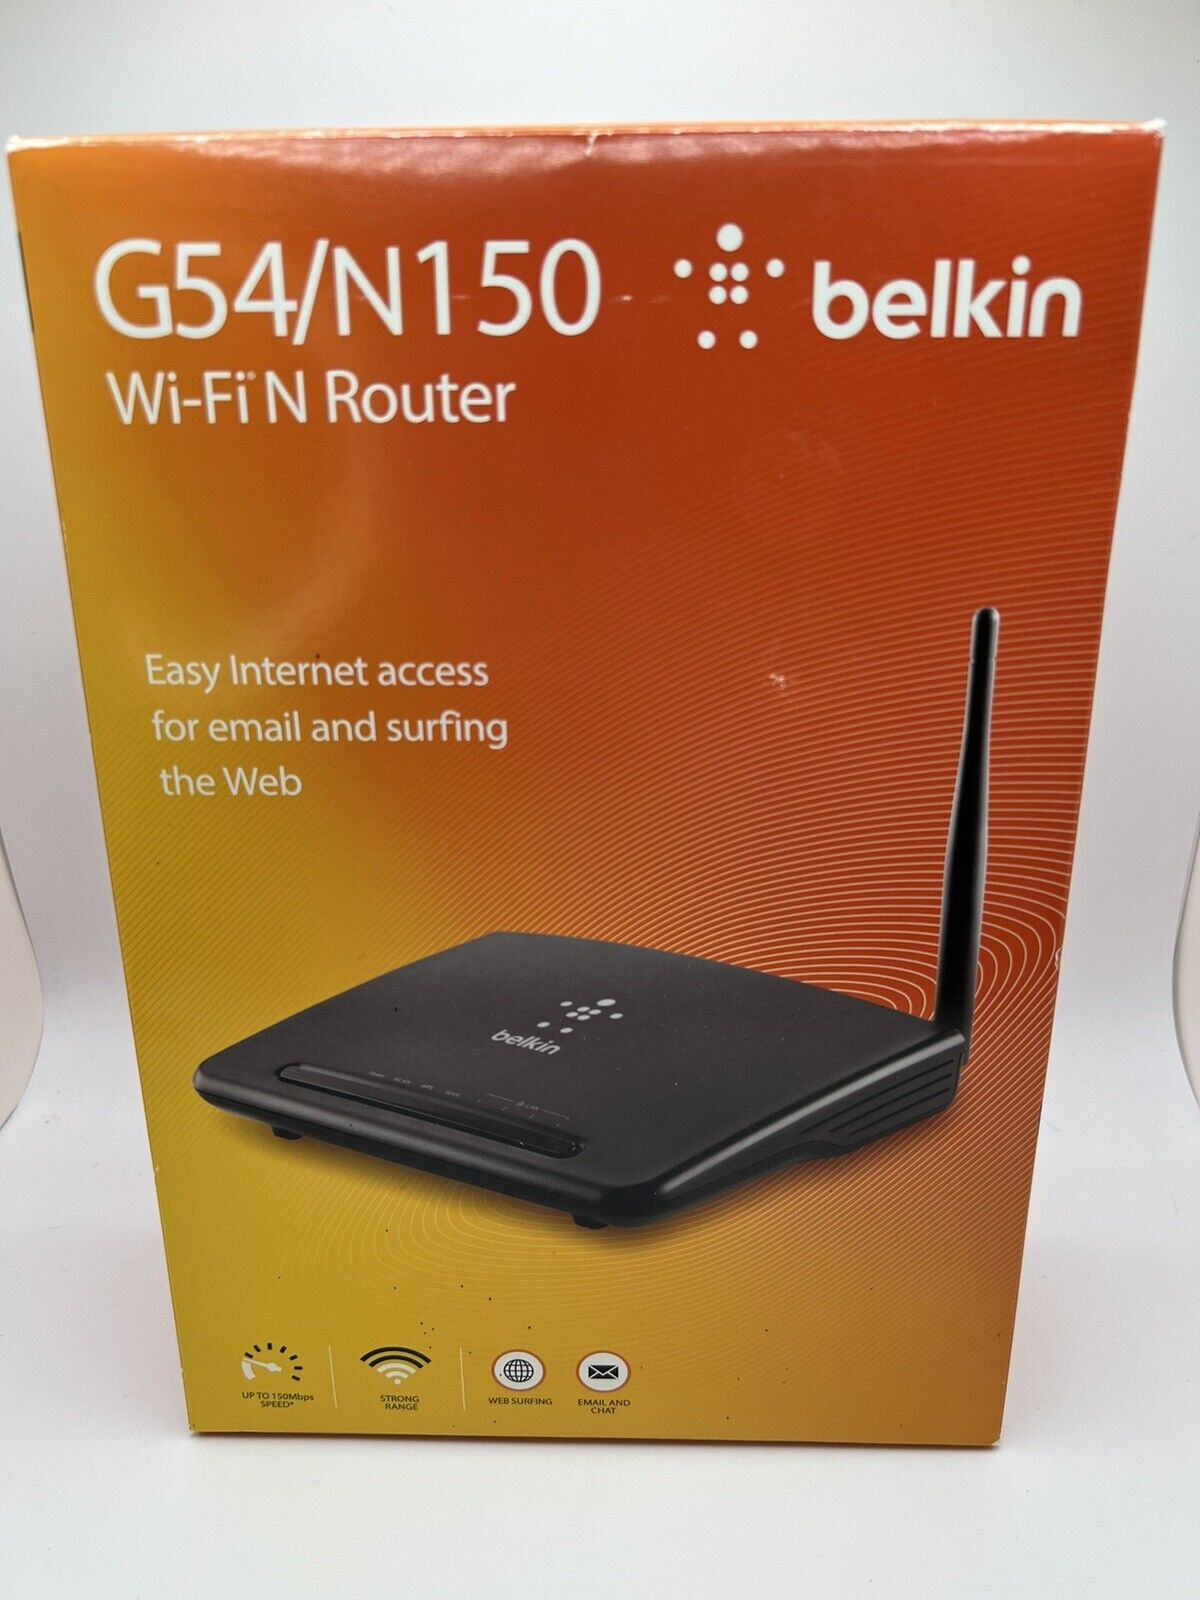 New Netgear G54/N150 Wireless Router Belkin WiFi 150 MBPS 2.4 Ghz Strong Range